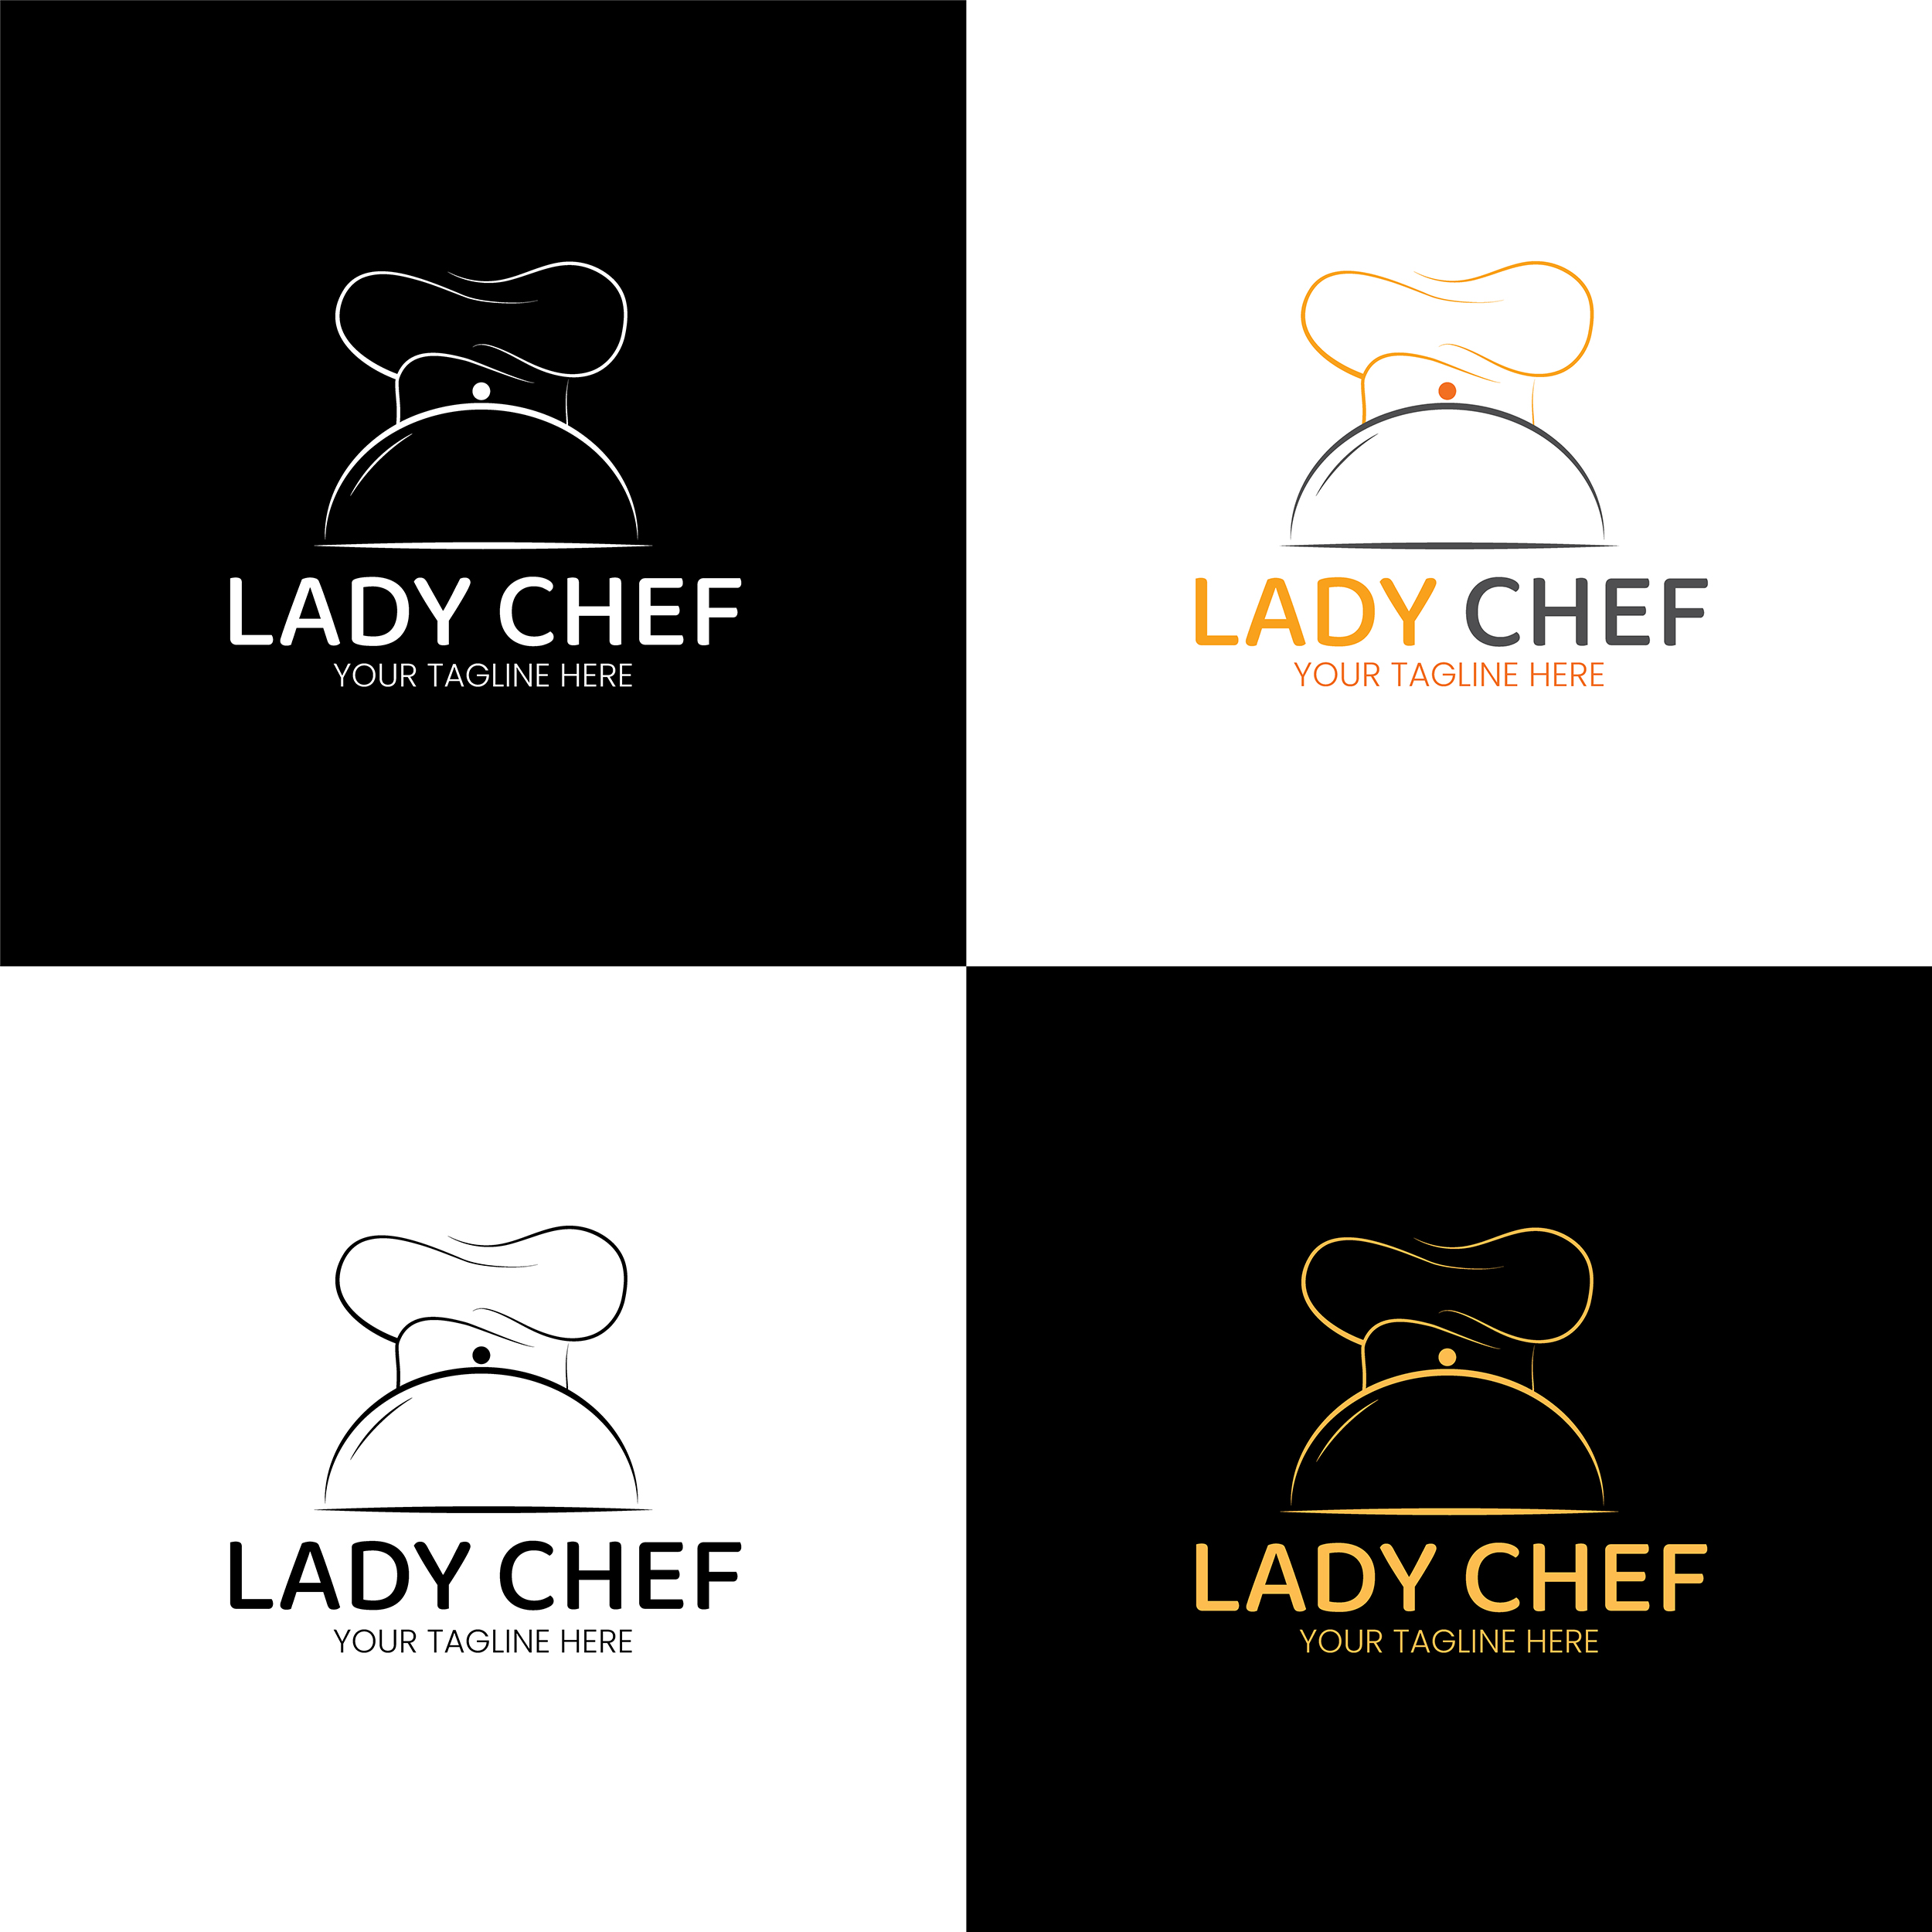 lady chef 529